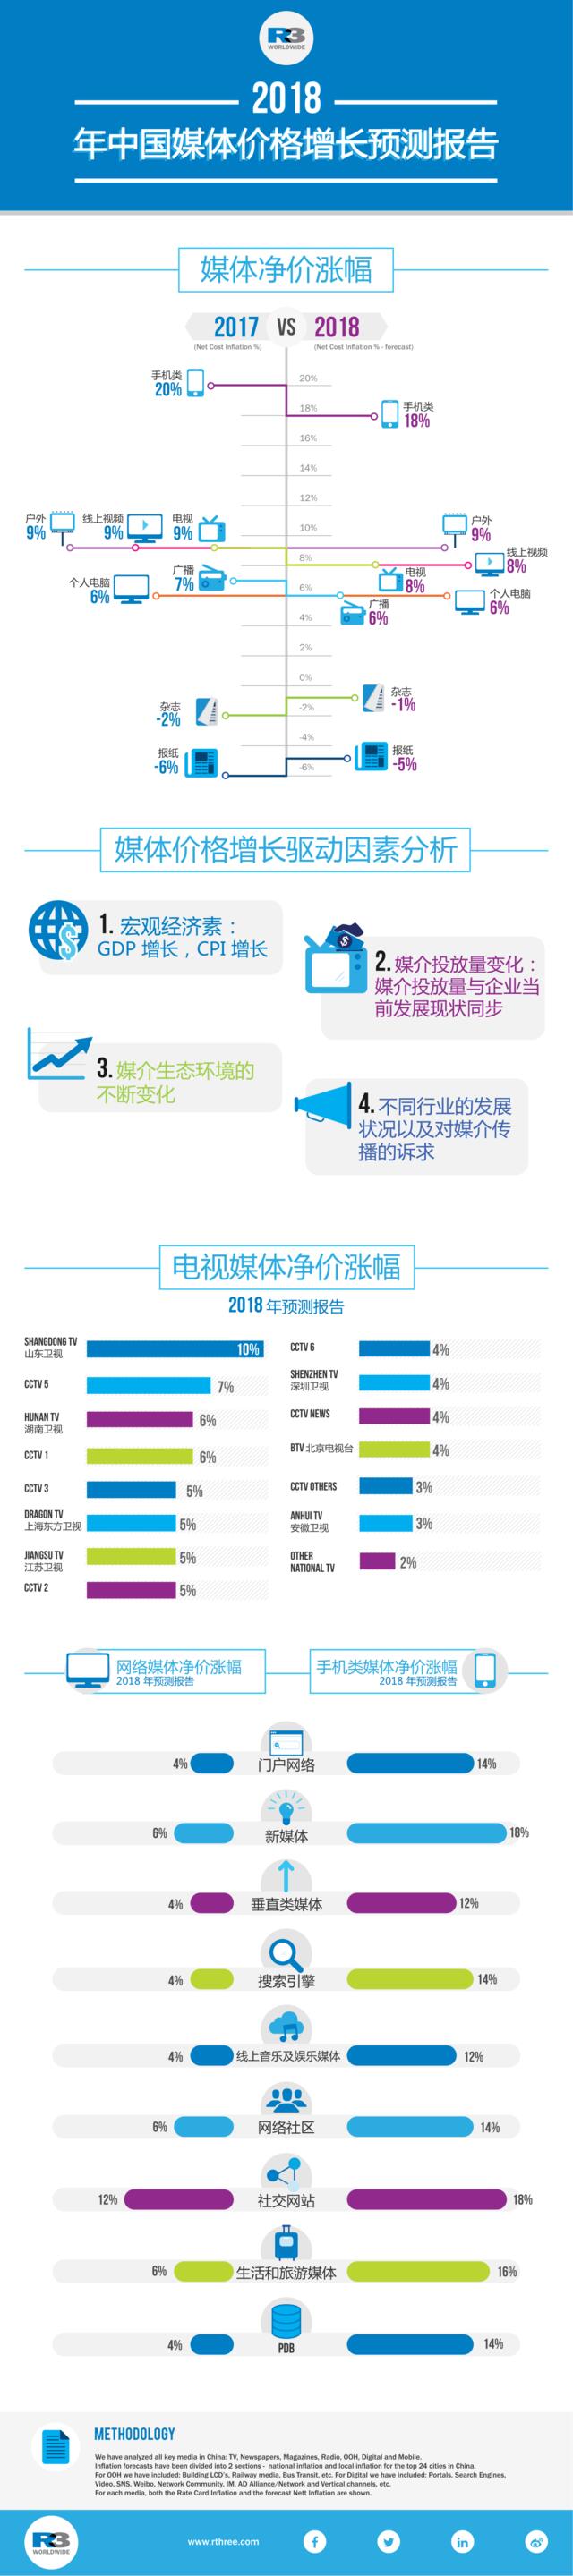 [营销星球]信息图：胜三2018年中国媒介价格增长趋势报告